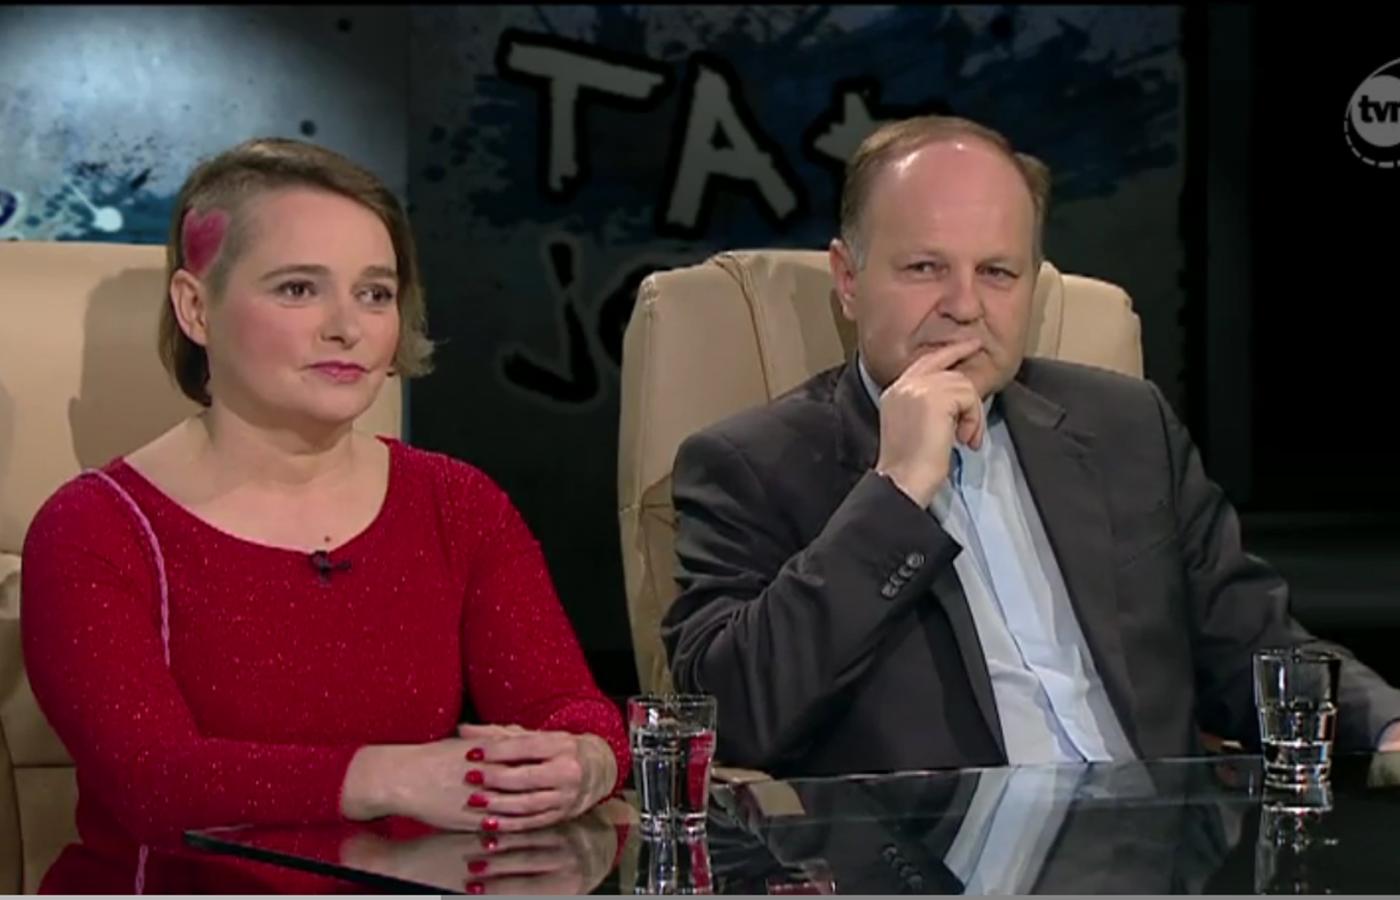 W TVN24 Anka Zawadzka z różowym serduszkiem wymalowanym na wygolonej skórze włosów nie dała dojść do głosu Andrzejowi Morozowskiemu.